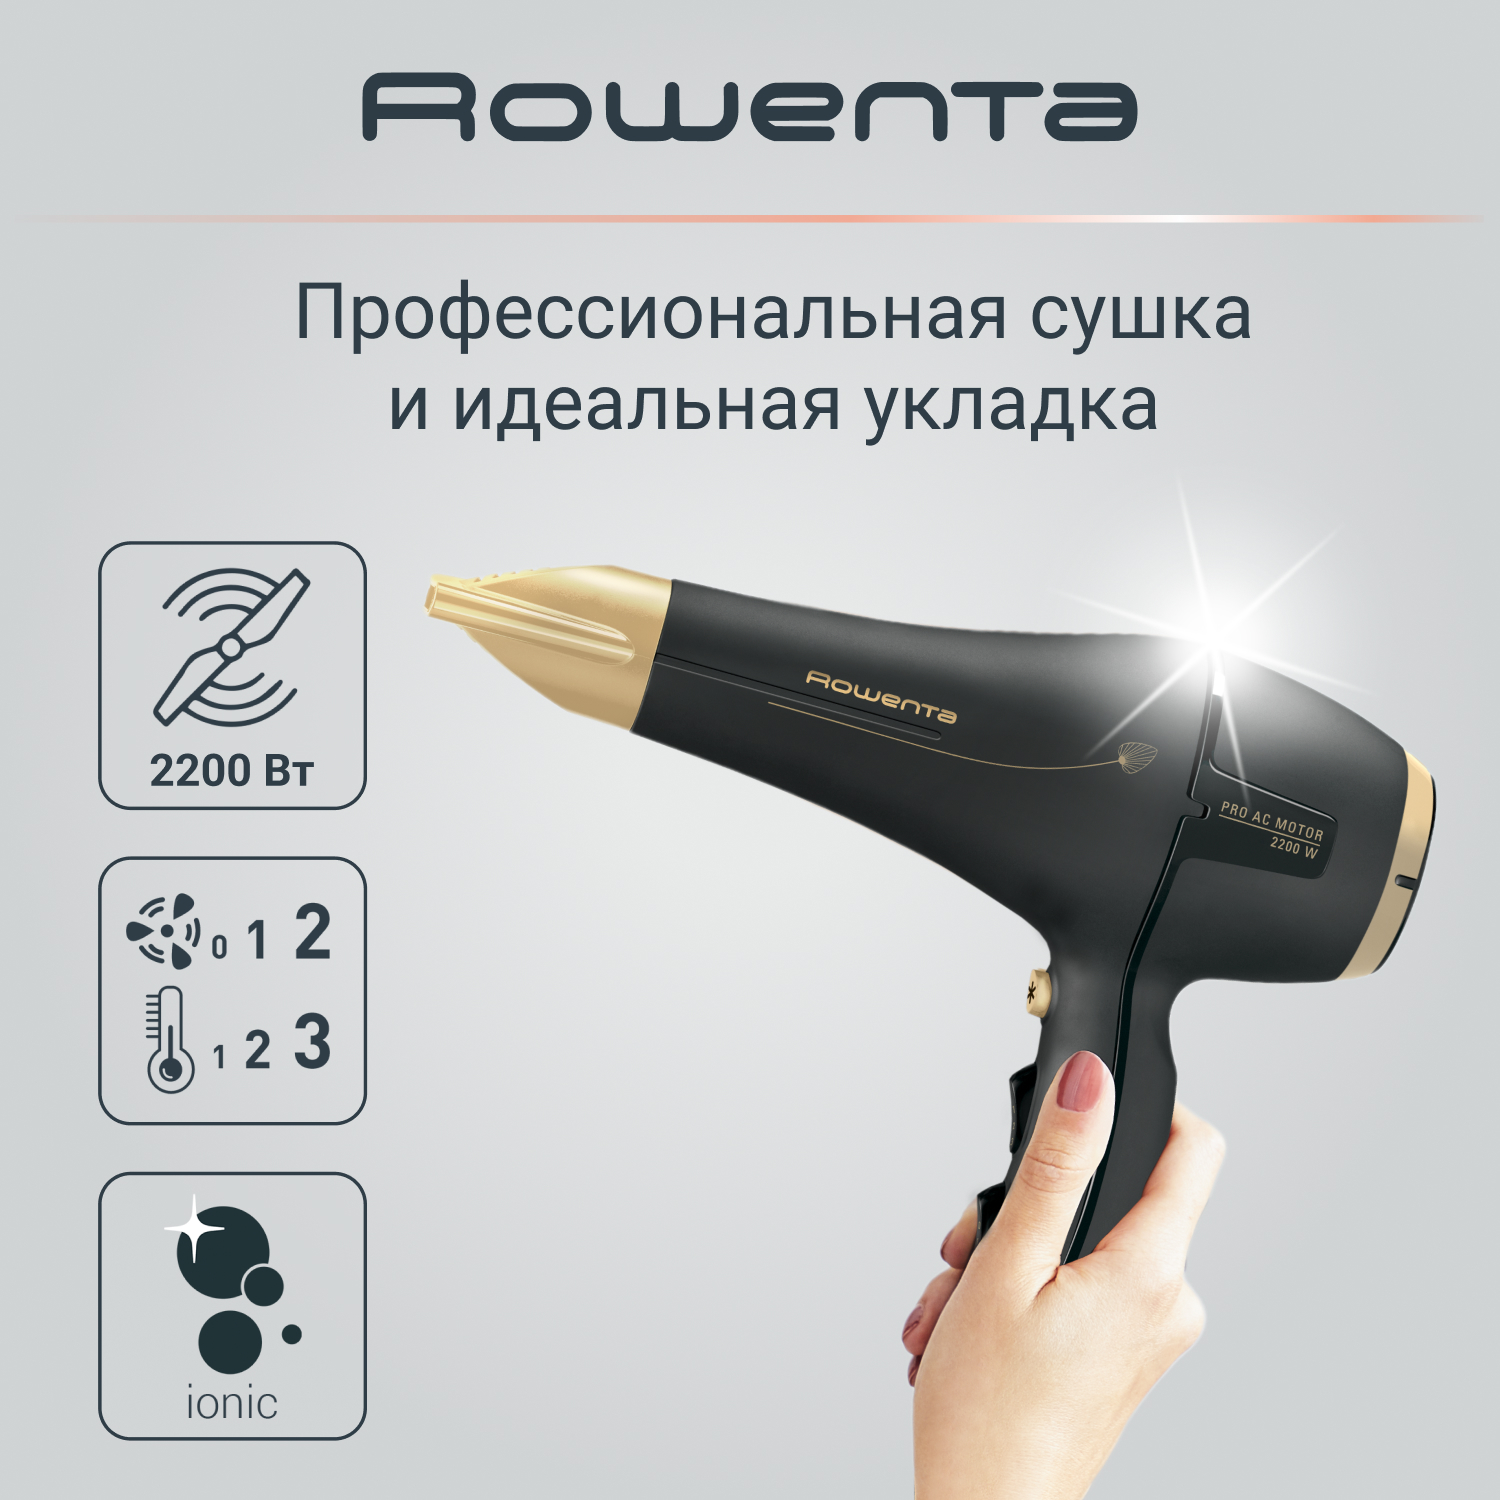 Фен Rowenta Signature Pro AC Magic Nature CV7846F0, 2200 Вт, черный/золотой профессиональный фен signature pro ac cv7810f0